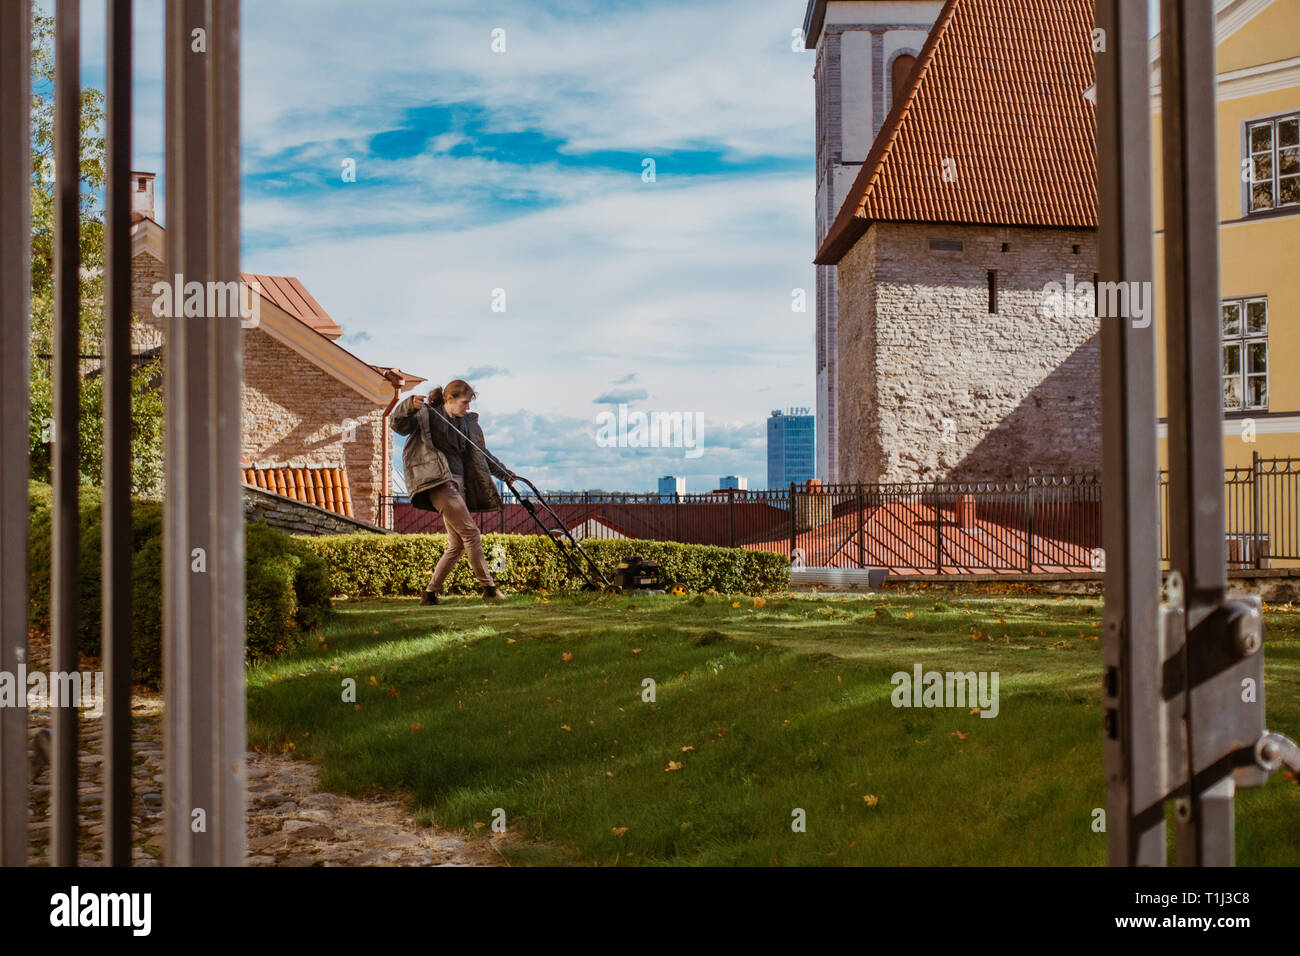 A woman mows a lawn with a rotary lawn mower in Tallinn, Estonia Stock Photo